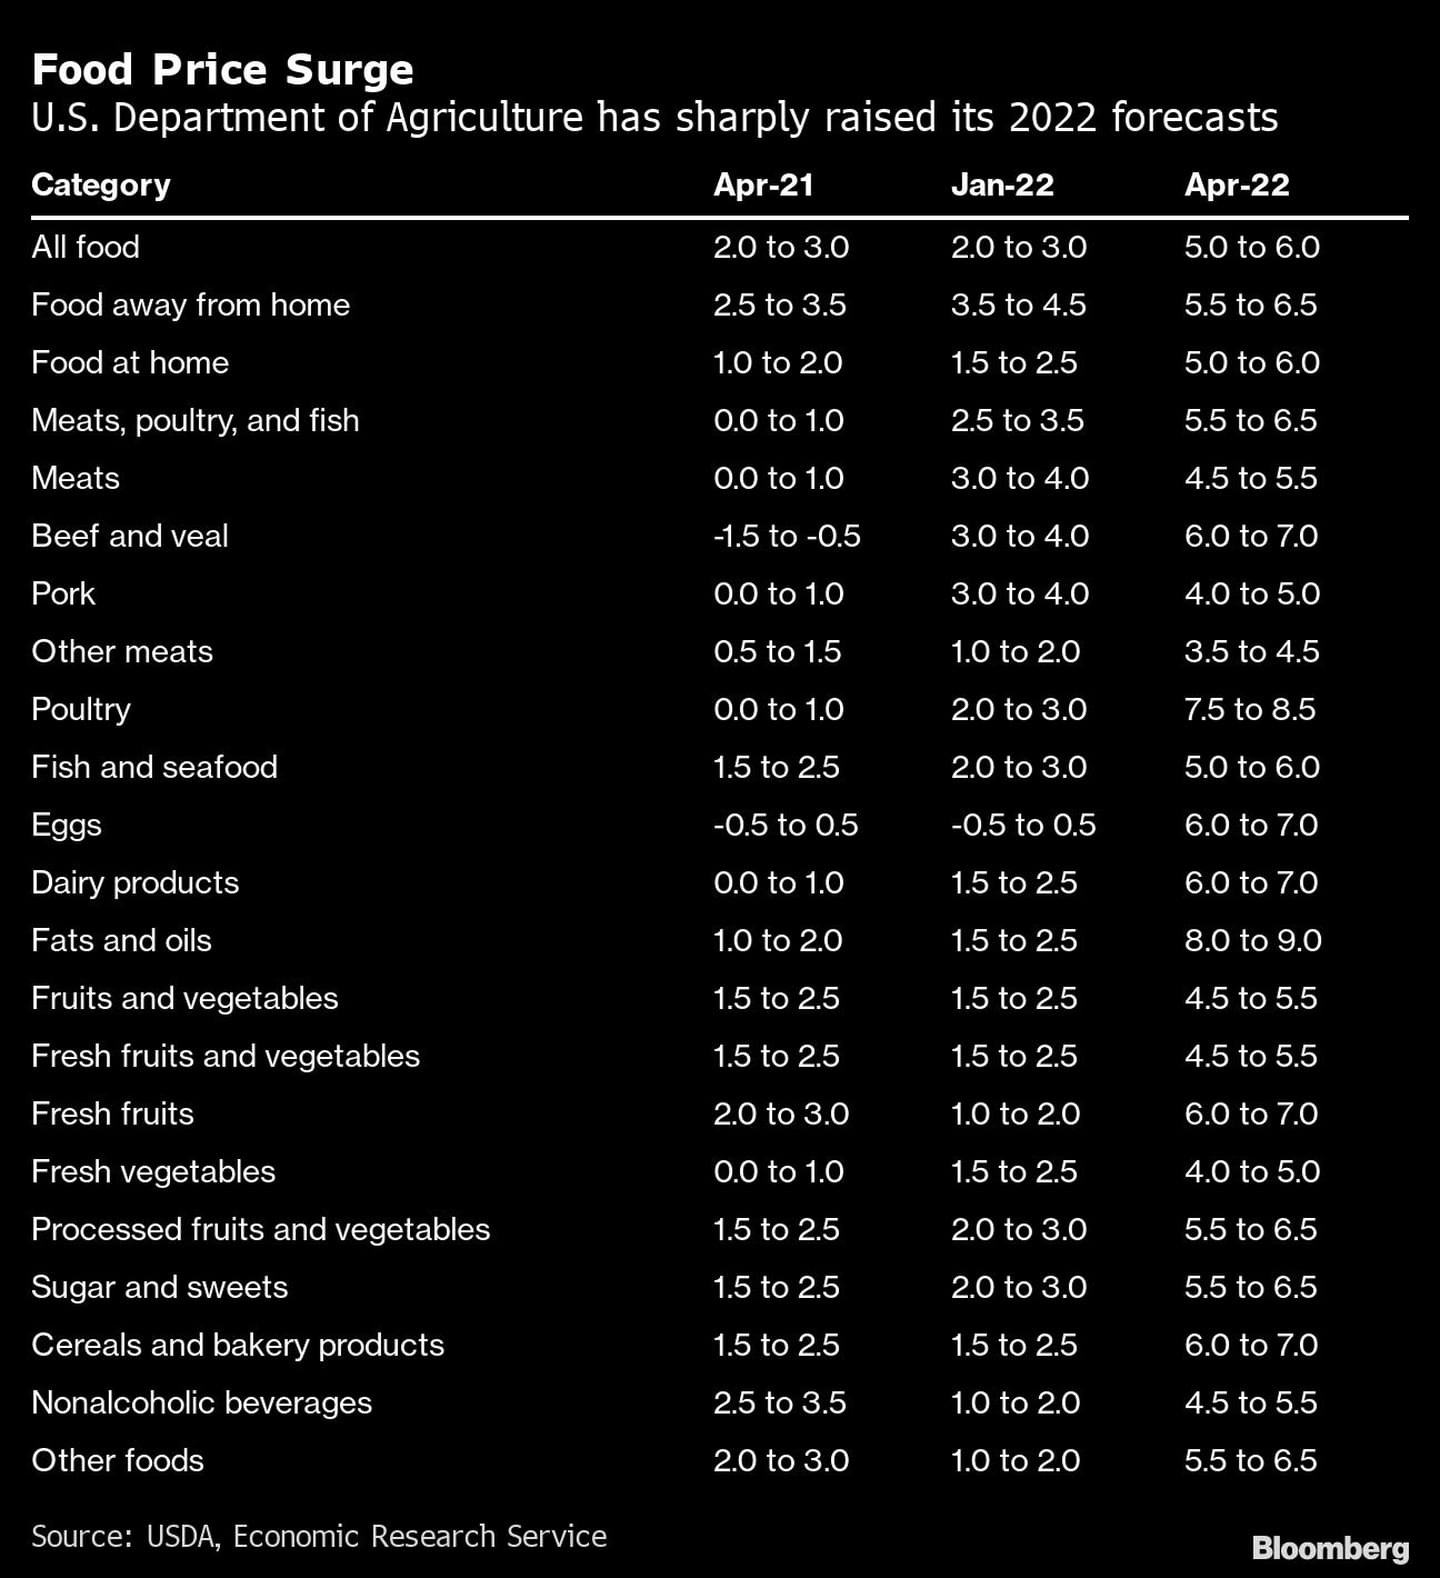 Aumento de los precios de los alimentos | El Departamento de Agricultura de EE.UU. ha elevado bruscamente sus previsiones para 2022dfd